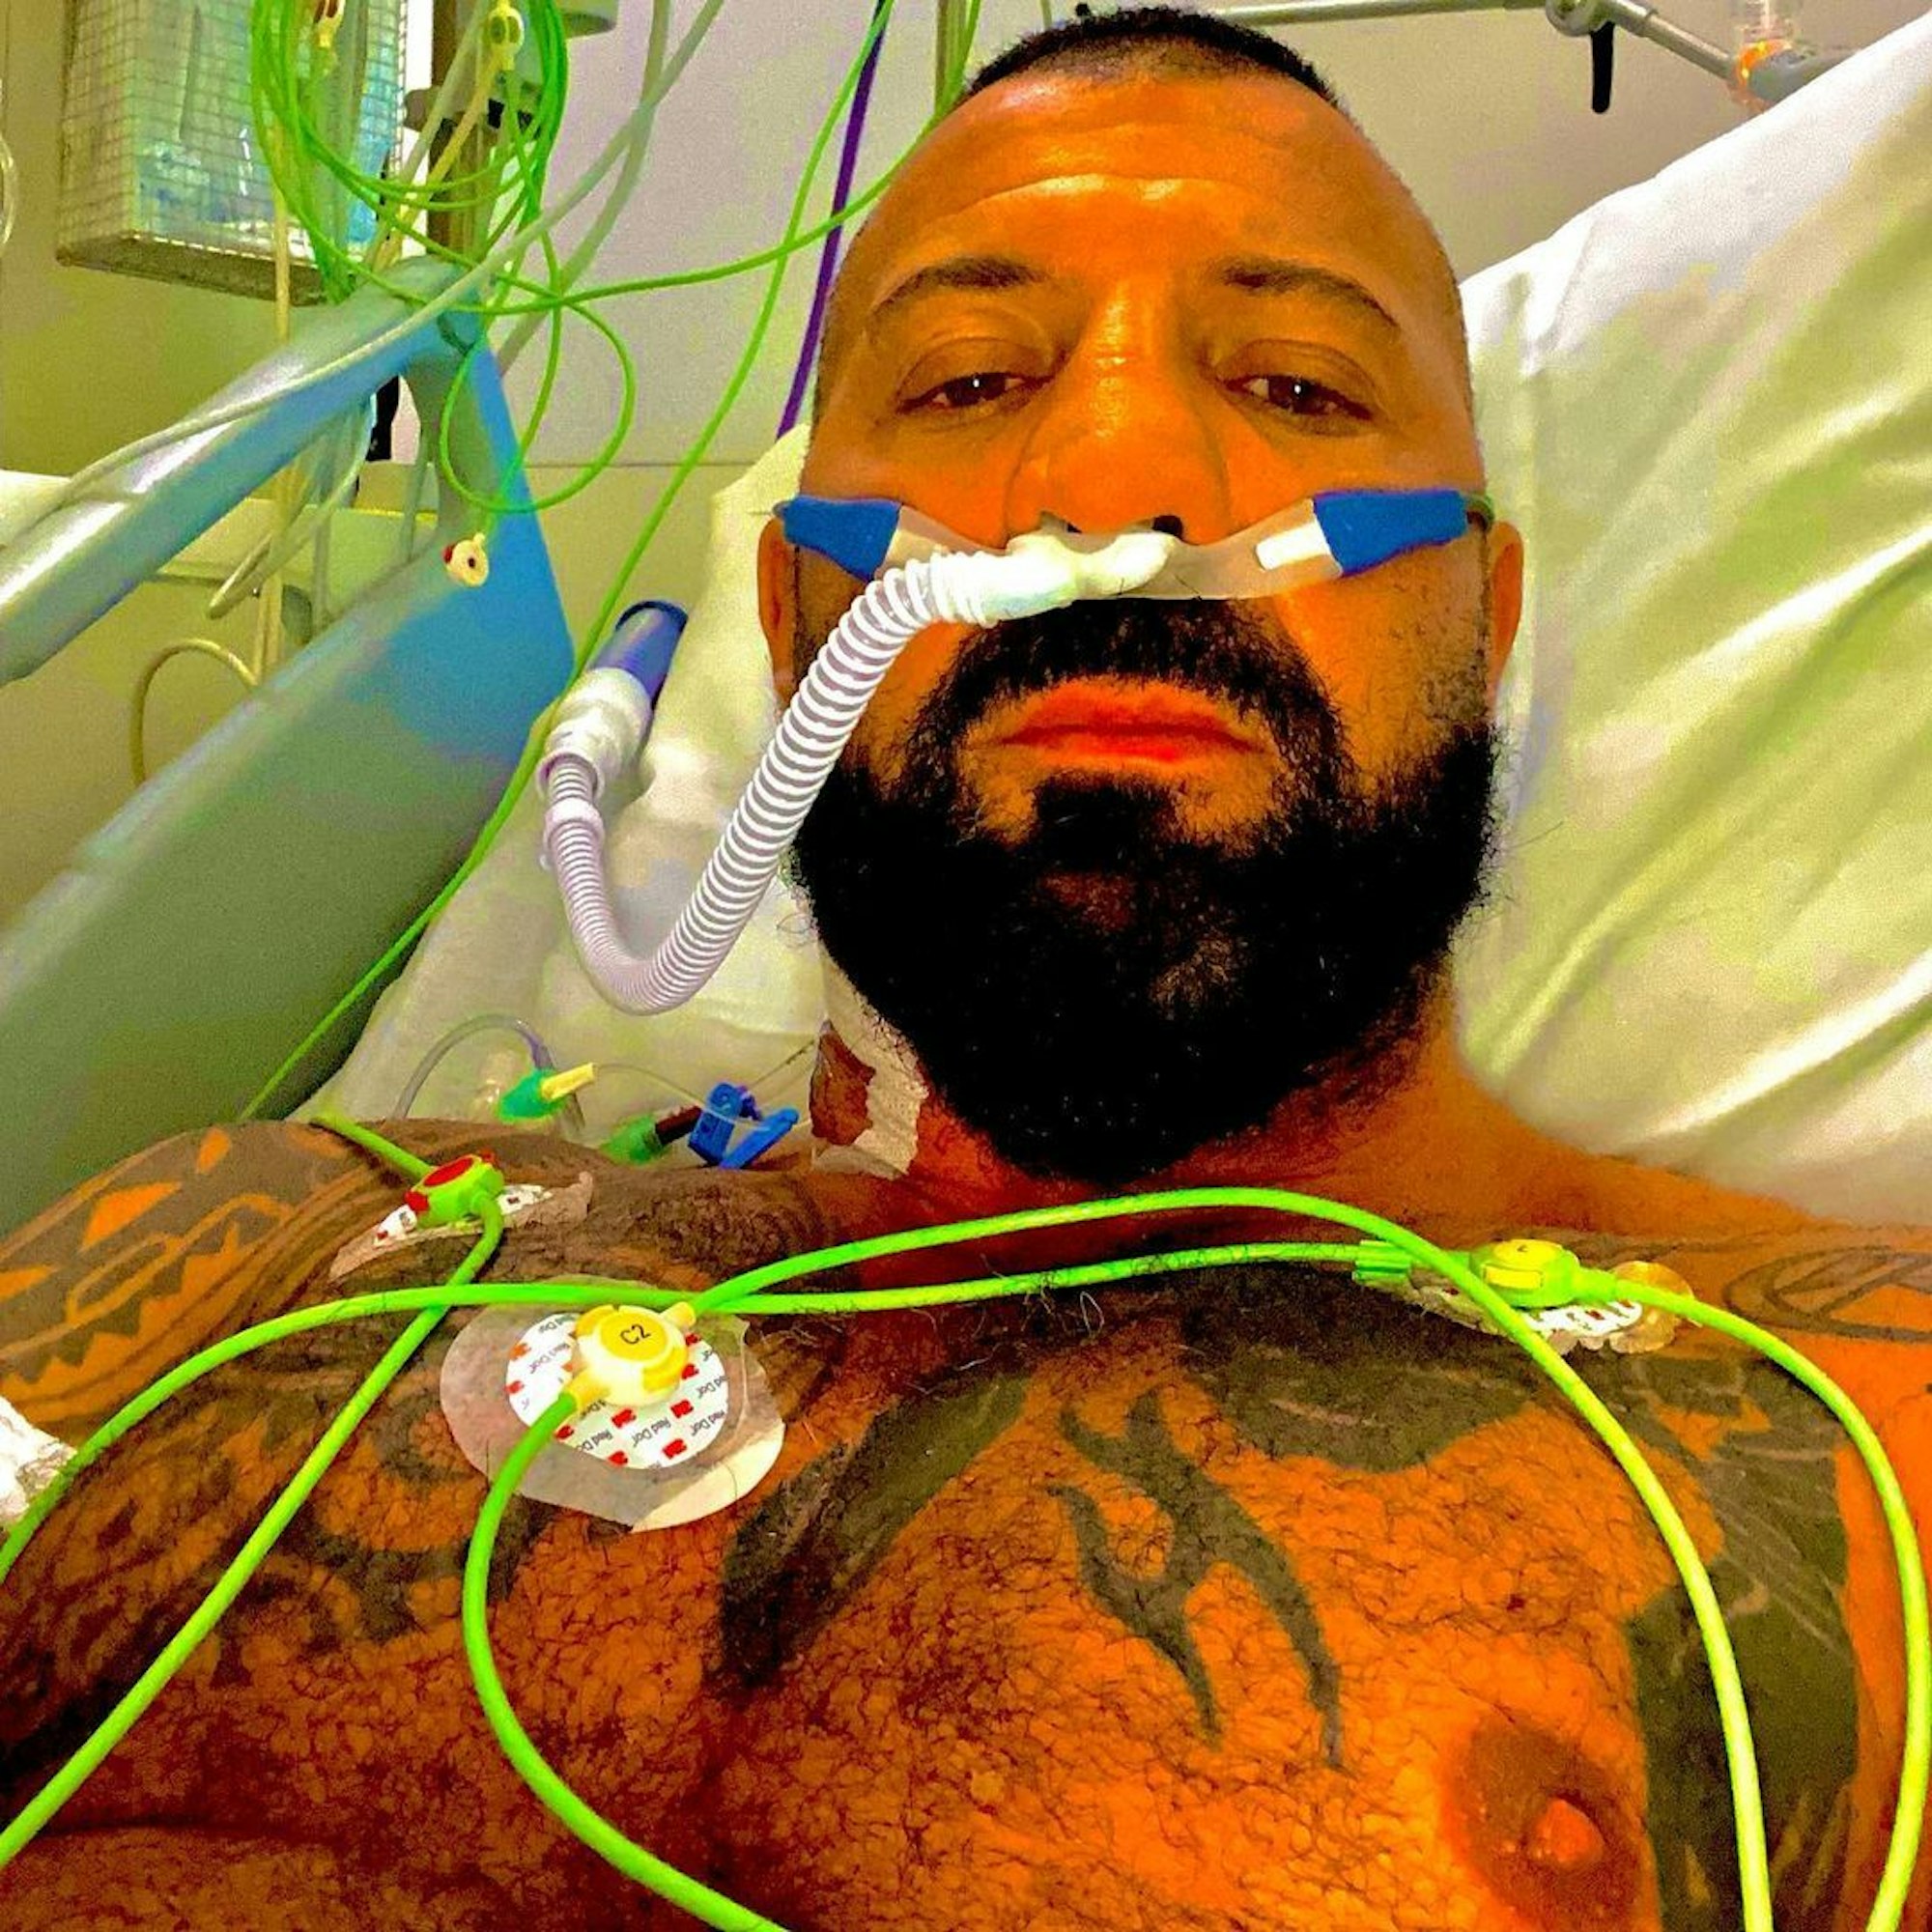 Der belgische Kickbox-Champion Frédéric Sinistra posiert für ein Selfie im Krankenbett